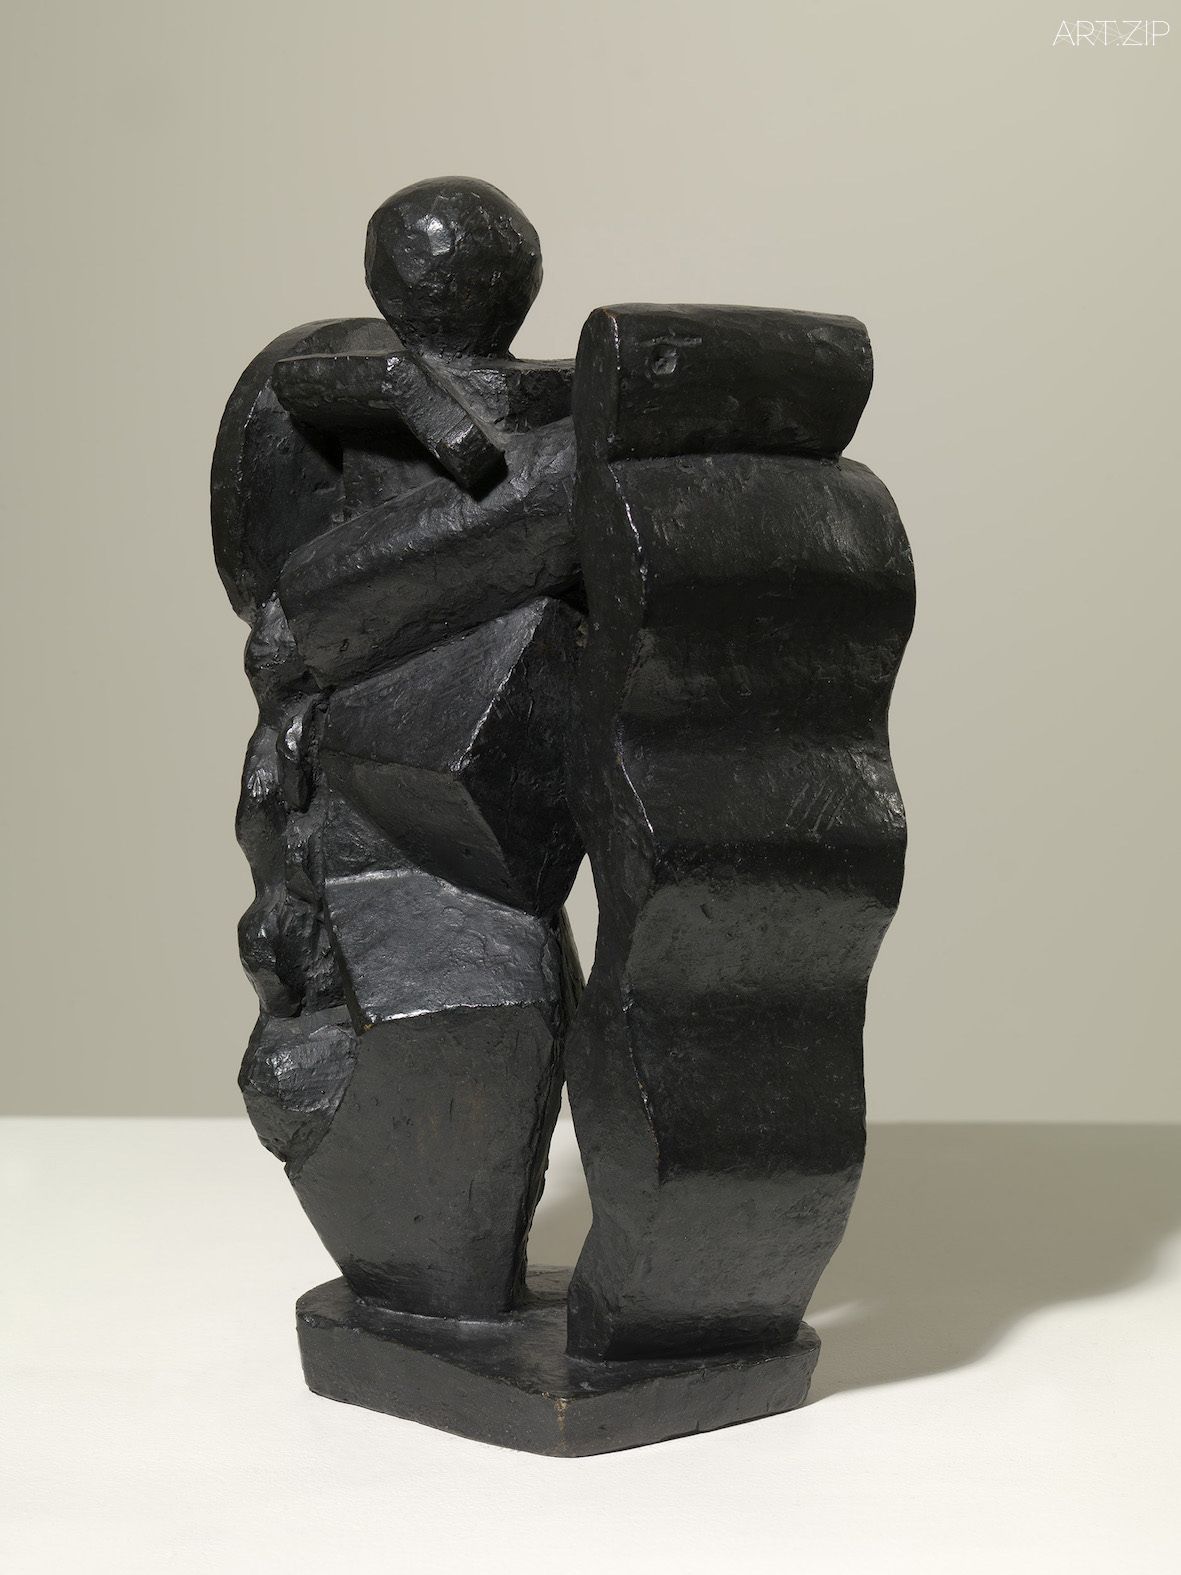 Composition, 1927-8, Bronze, 31.3 x 18.1 x 11.6 cm © The Estate of Alberto Giacometti